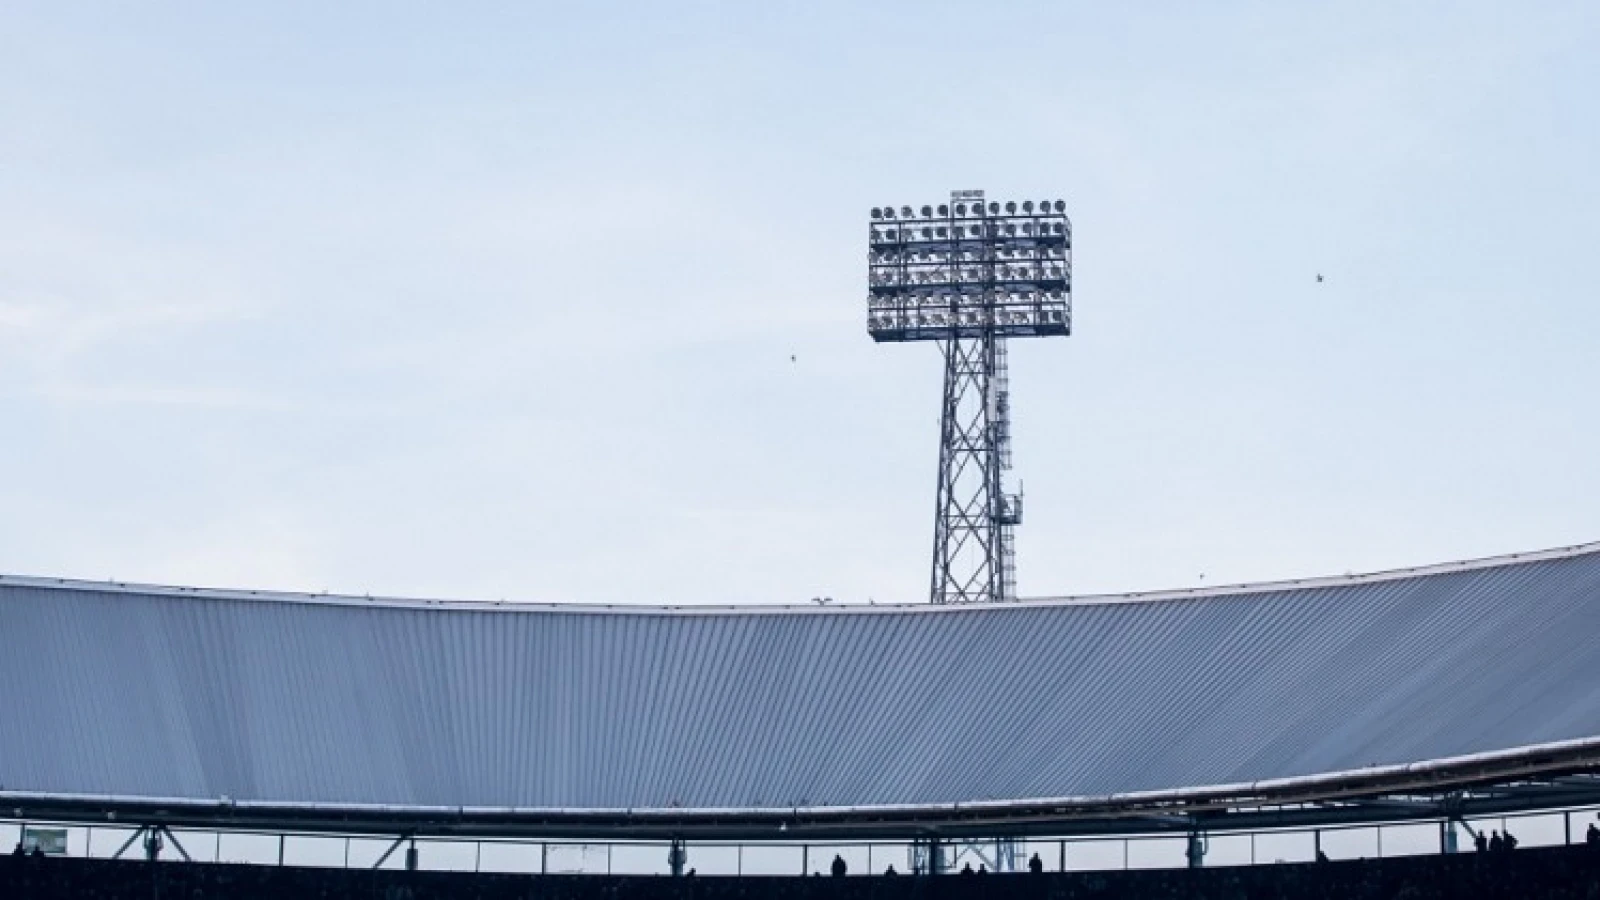 Gokindustrie achter uitvallen stadionlampen? 'In Engeland is het drie keer gebeurd'